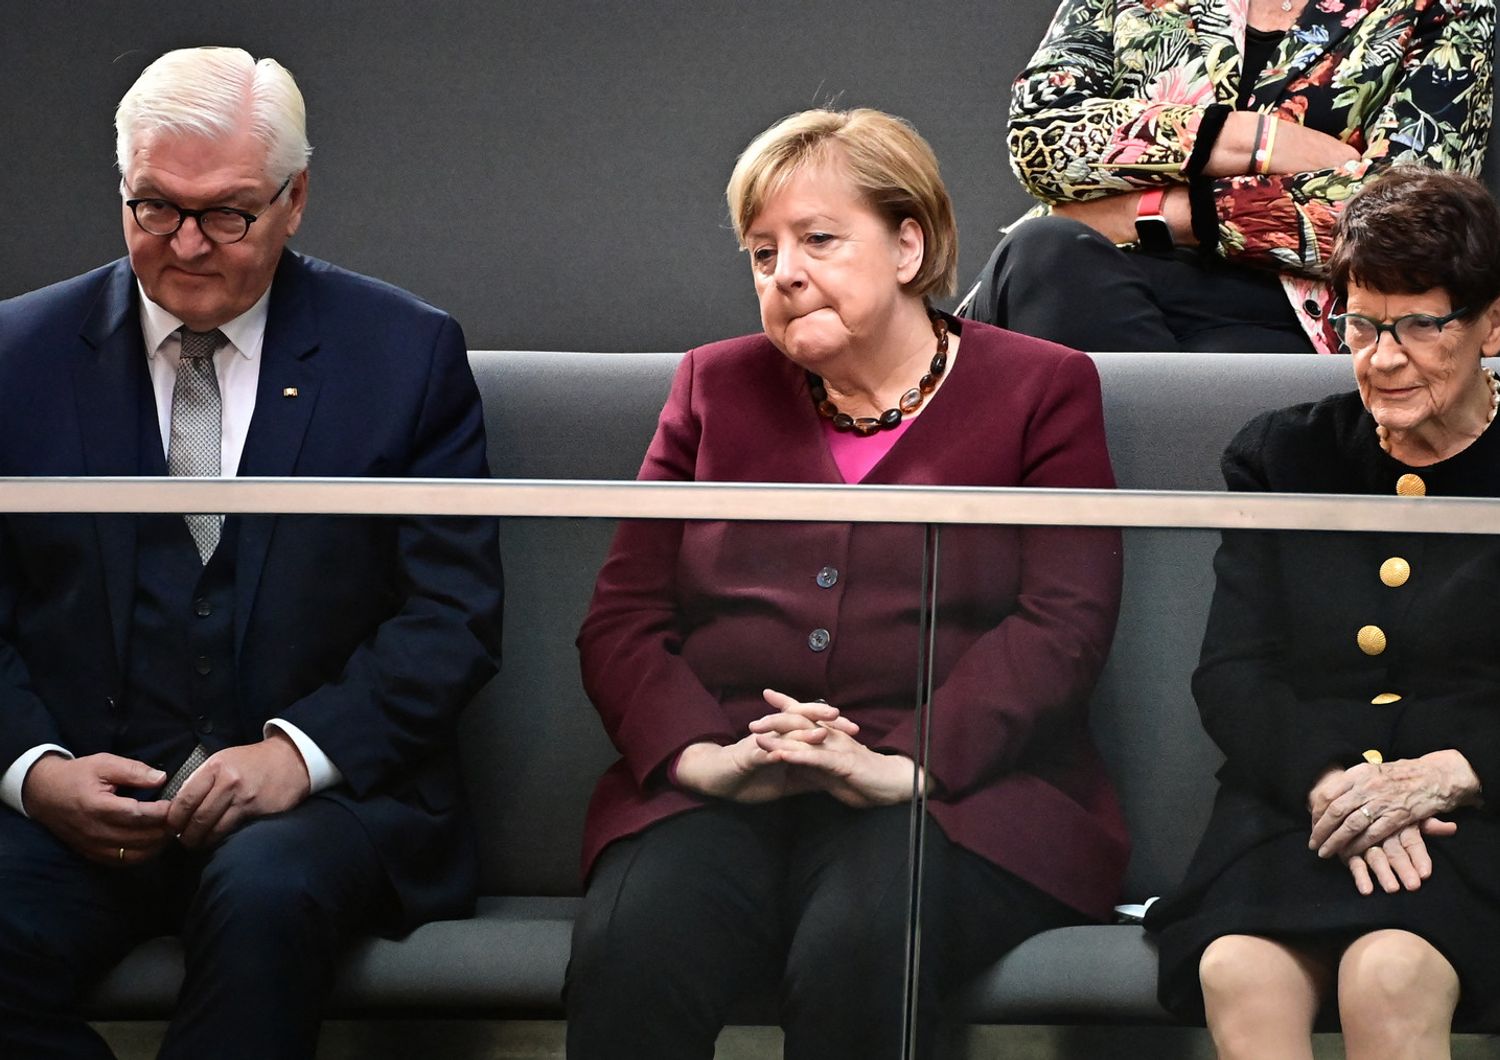 Frank-Walter Steinmeier e Angela Merkel&nbsp;